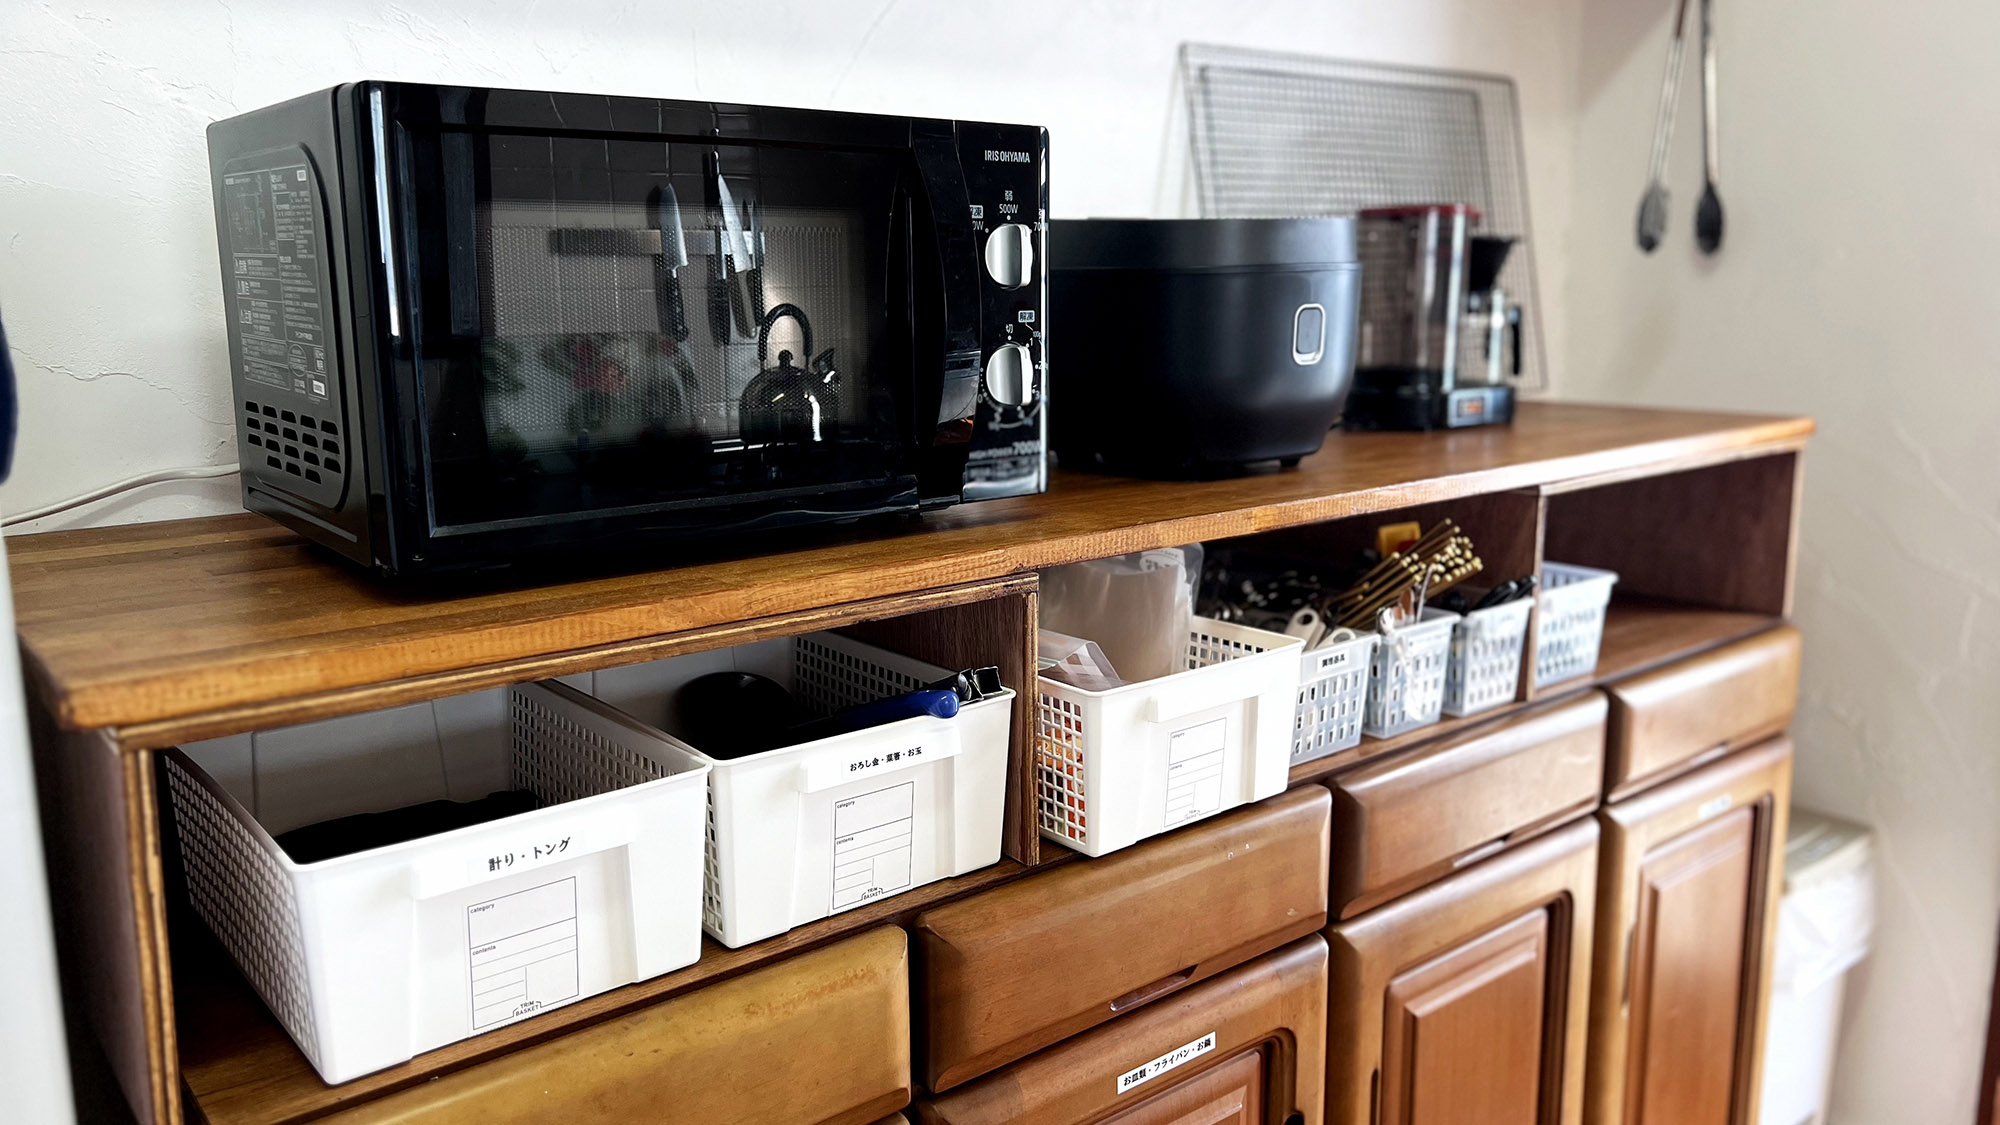 ・【キッチン】電子レンジや炊飯器、調理器具が揃っており本格的な自炊が可能です